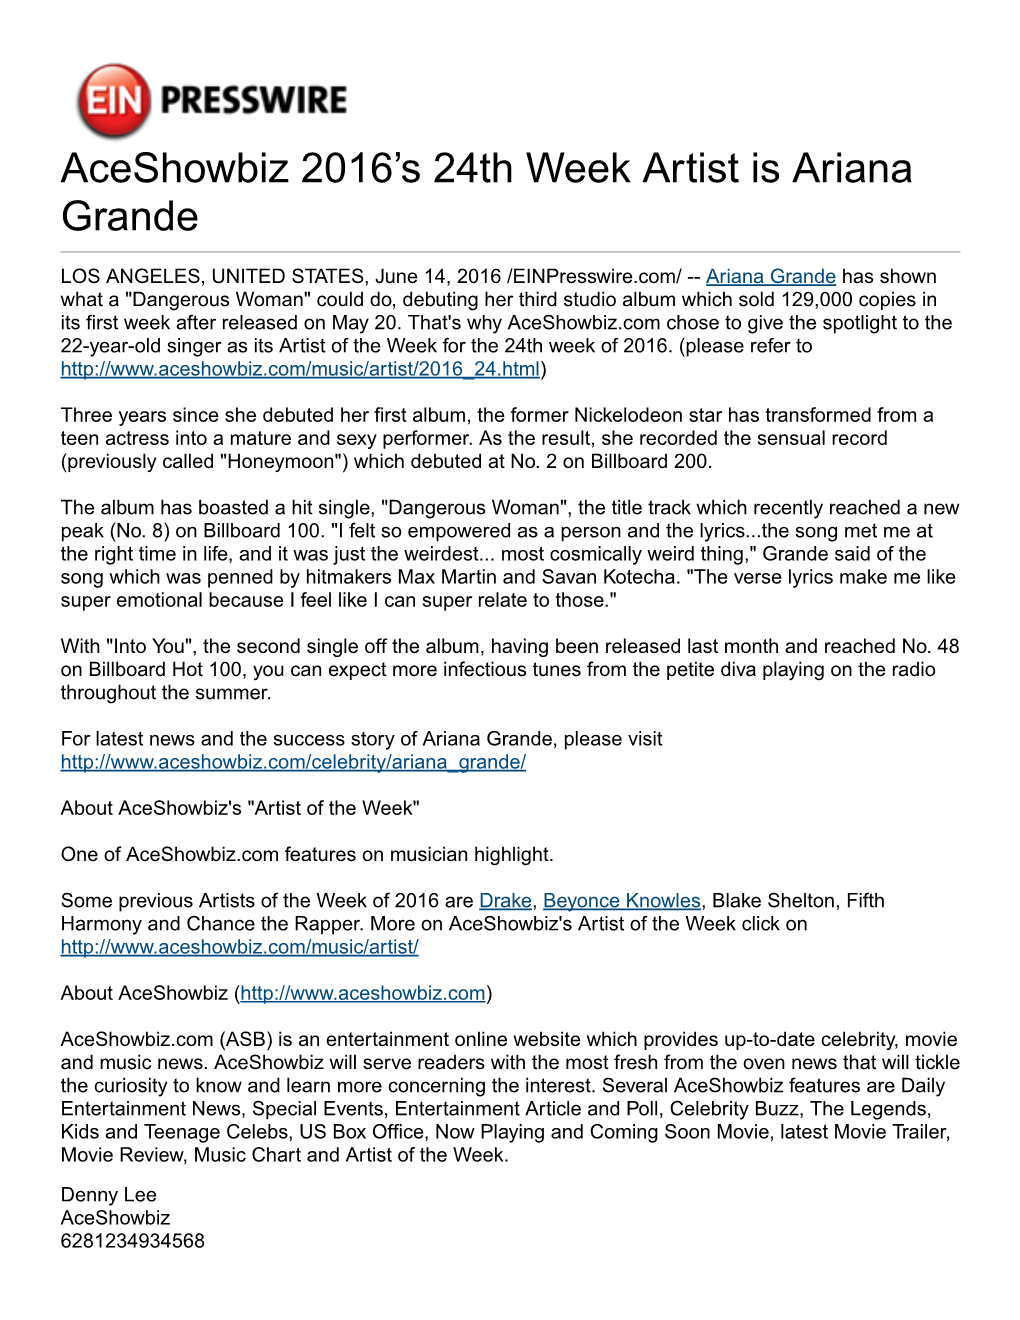 Aceshowbiz 2016'S 24Th Week Artist Is Ariana Grande